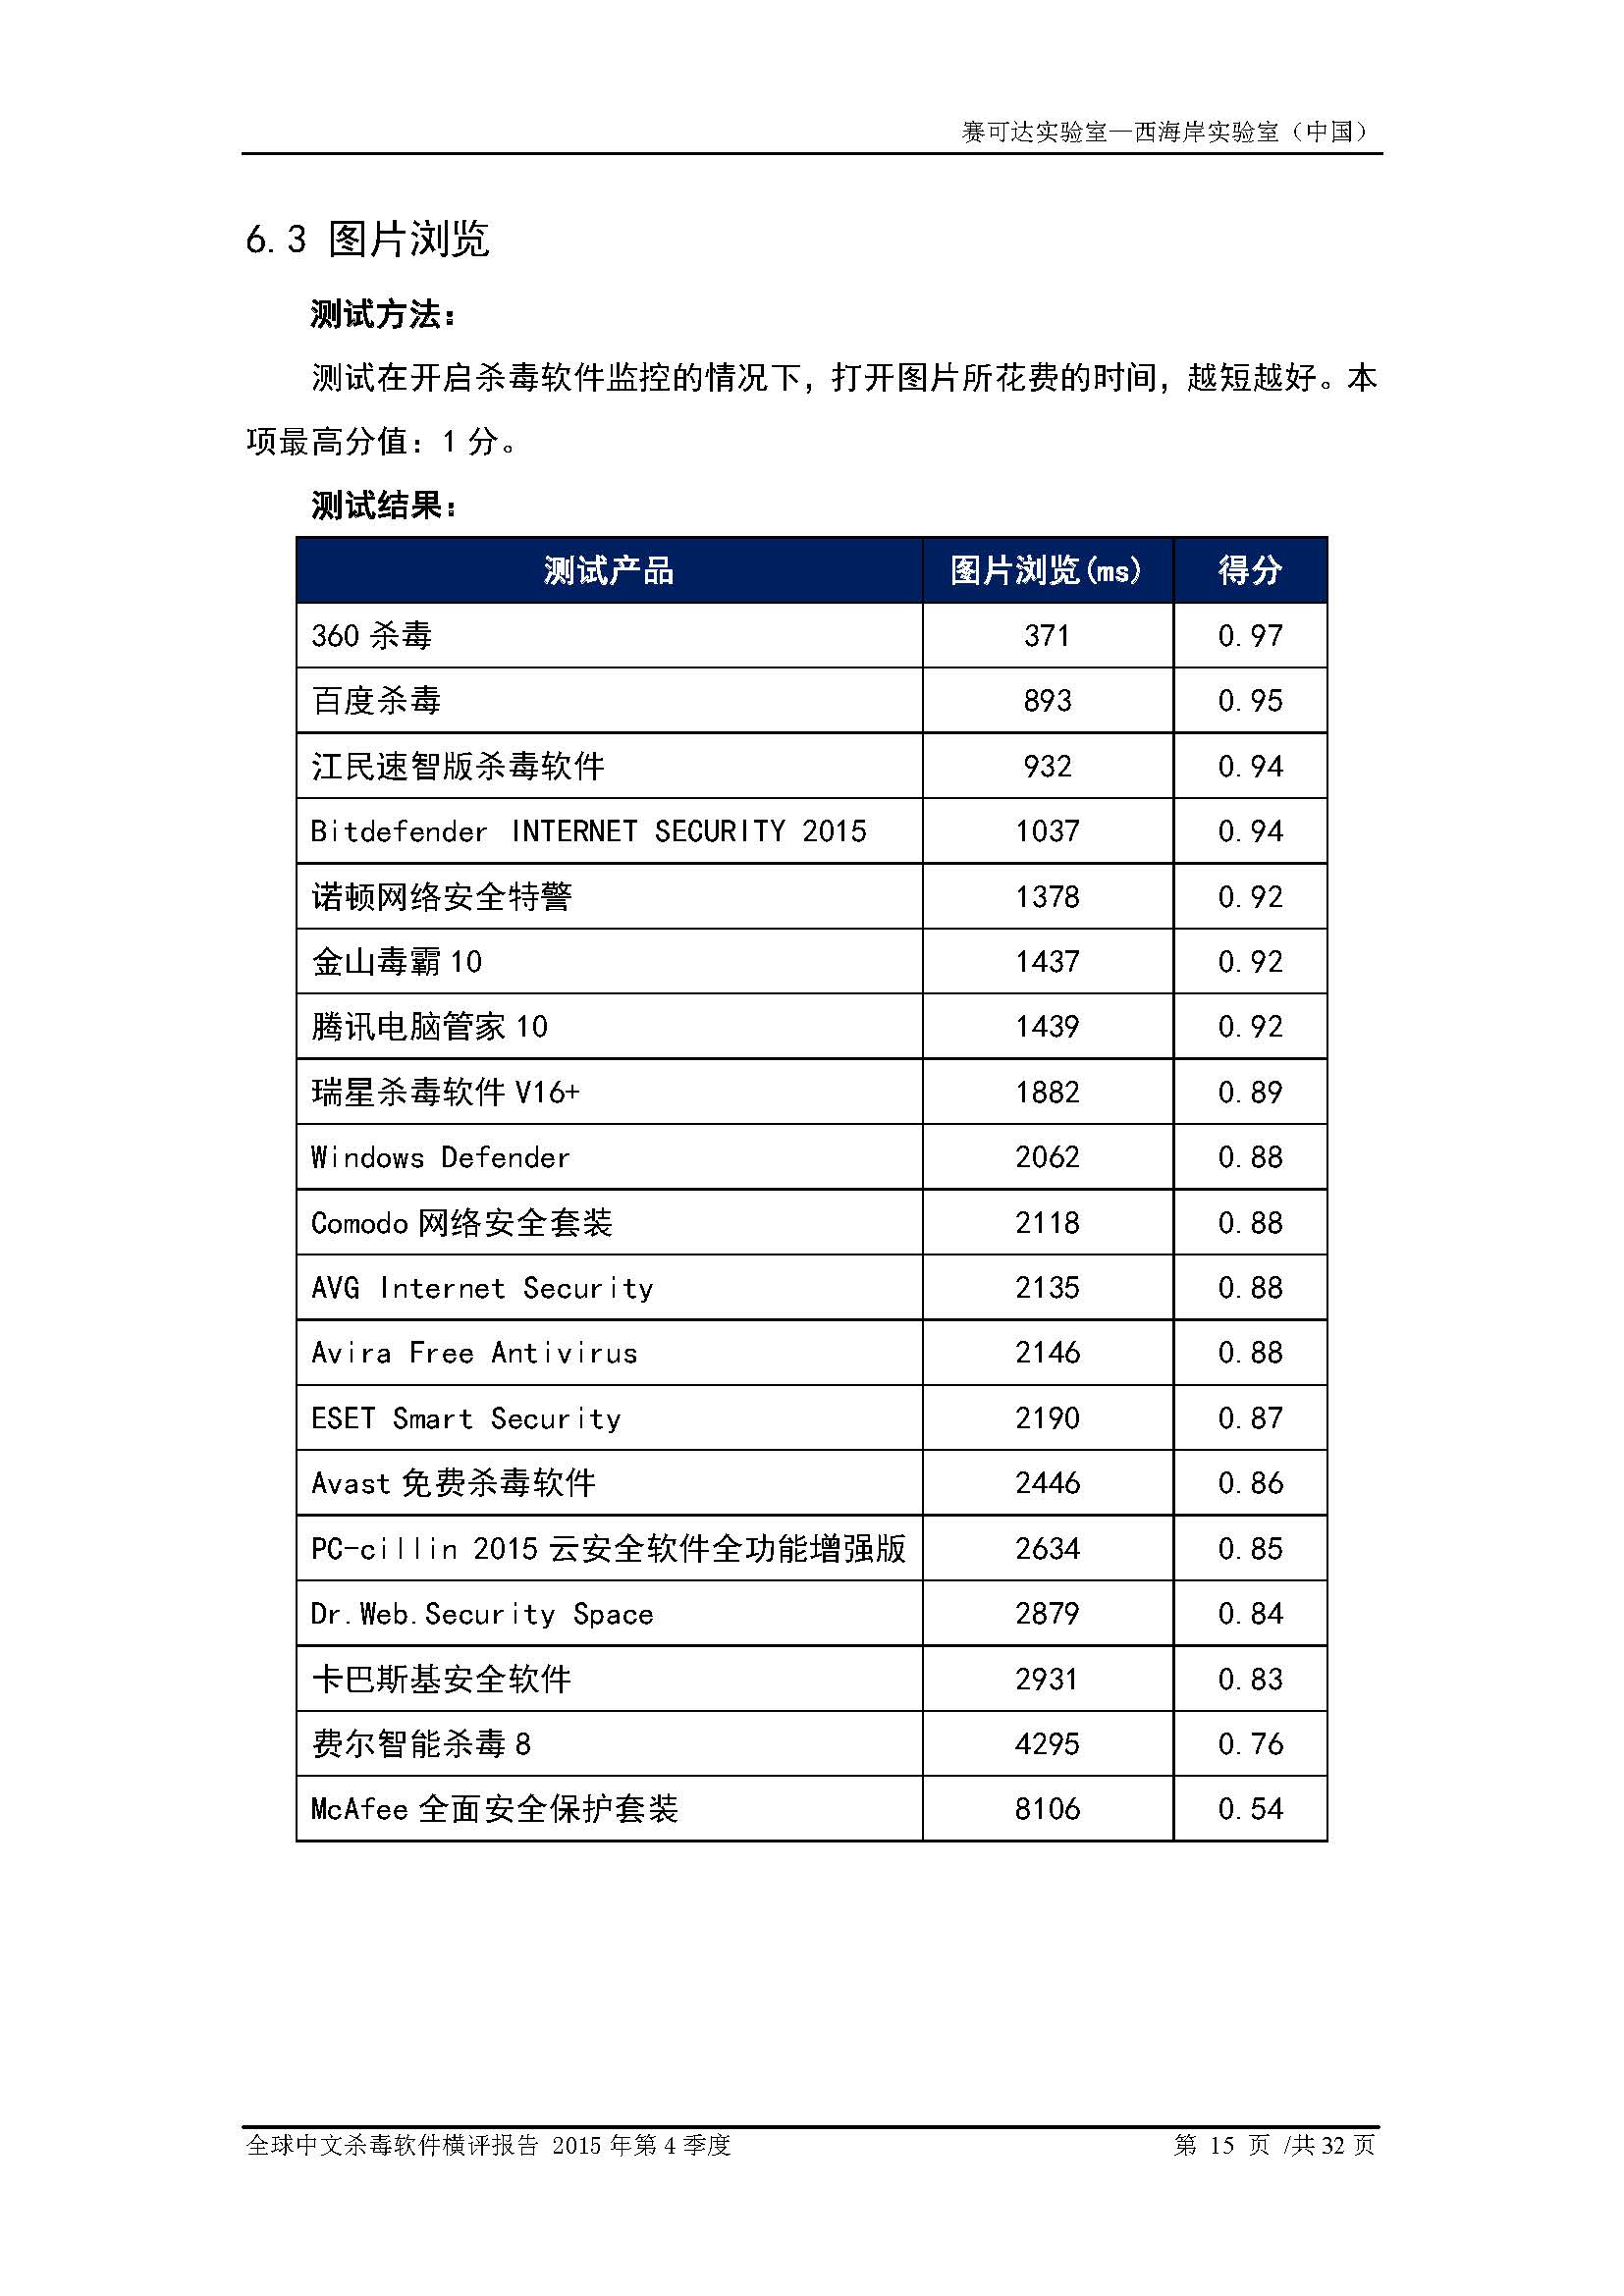 中文PC杀毒软件横评测试报告- Windows 8.1【中文版】.pdf (_Page_17.jpg